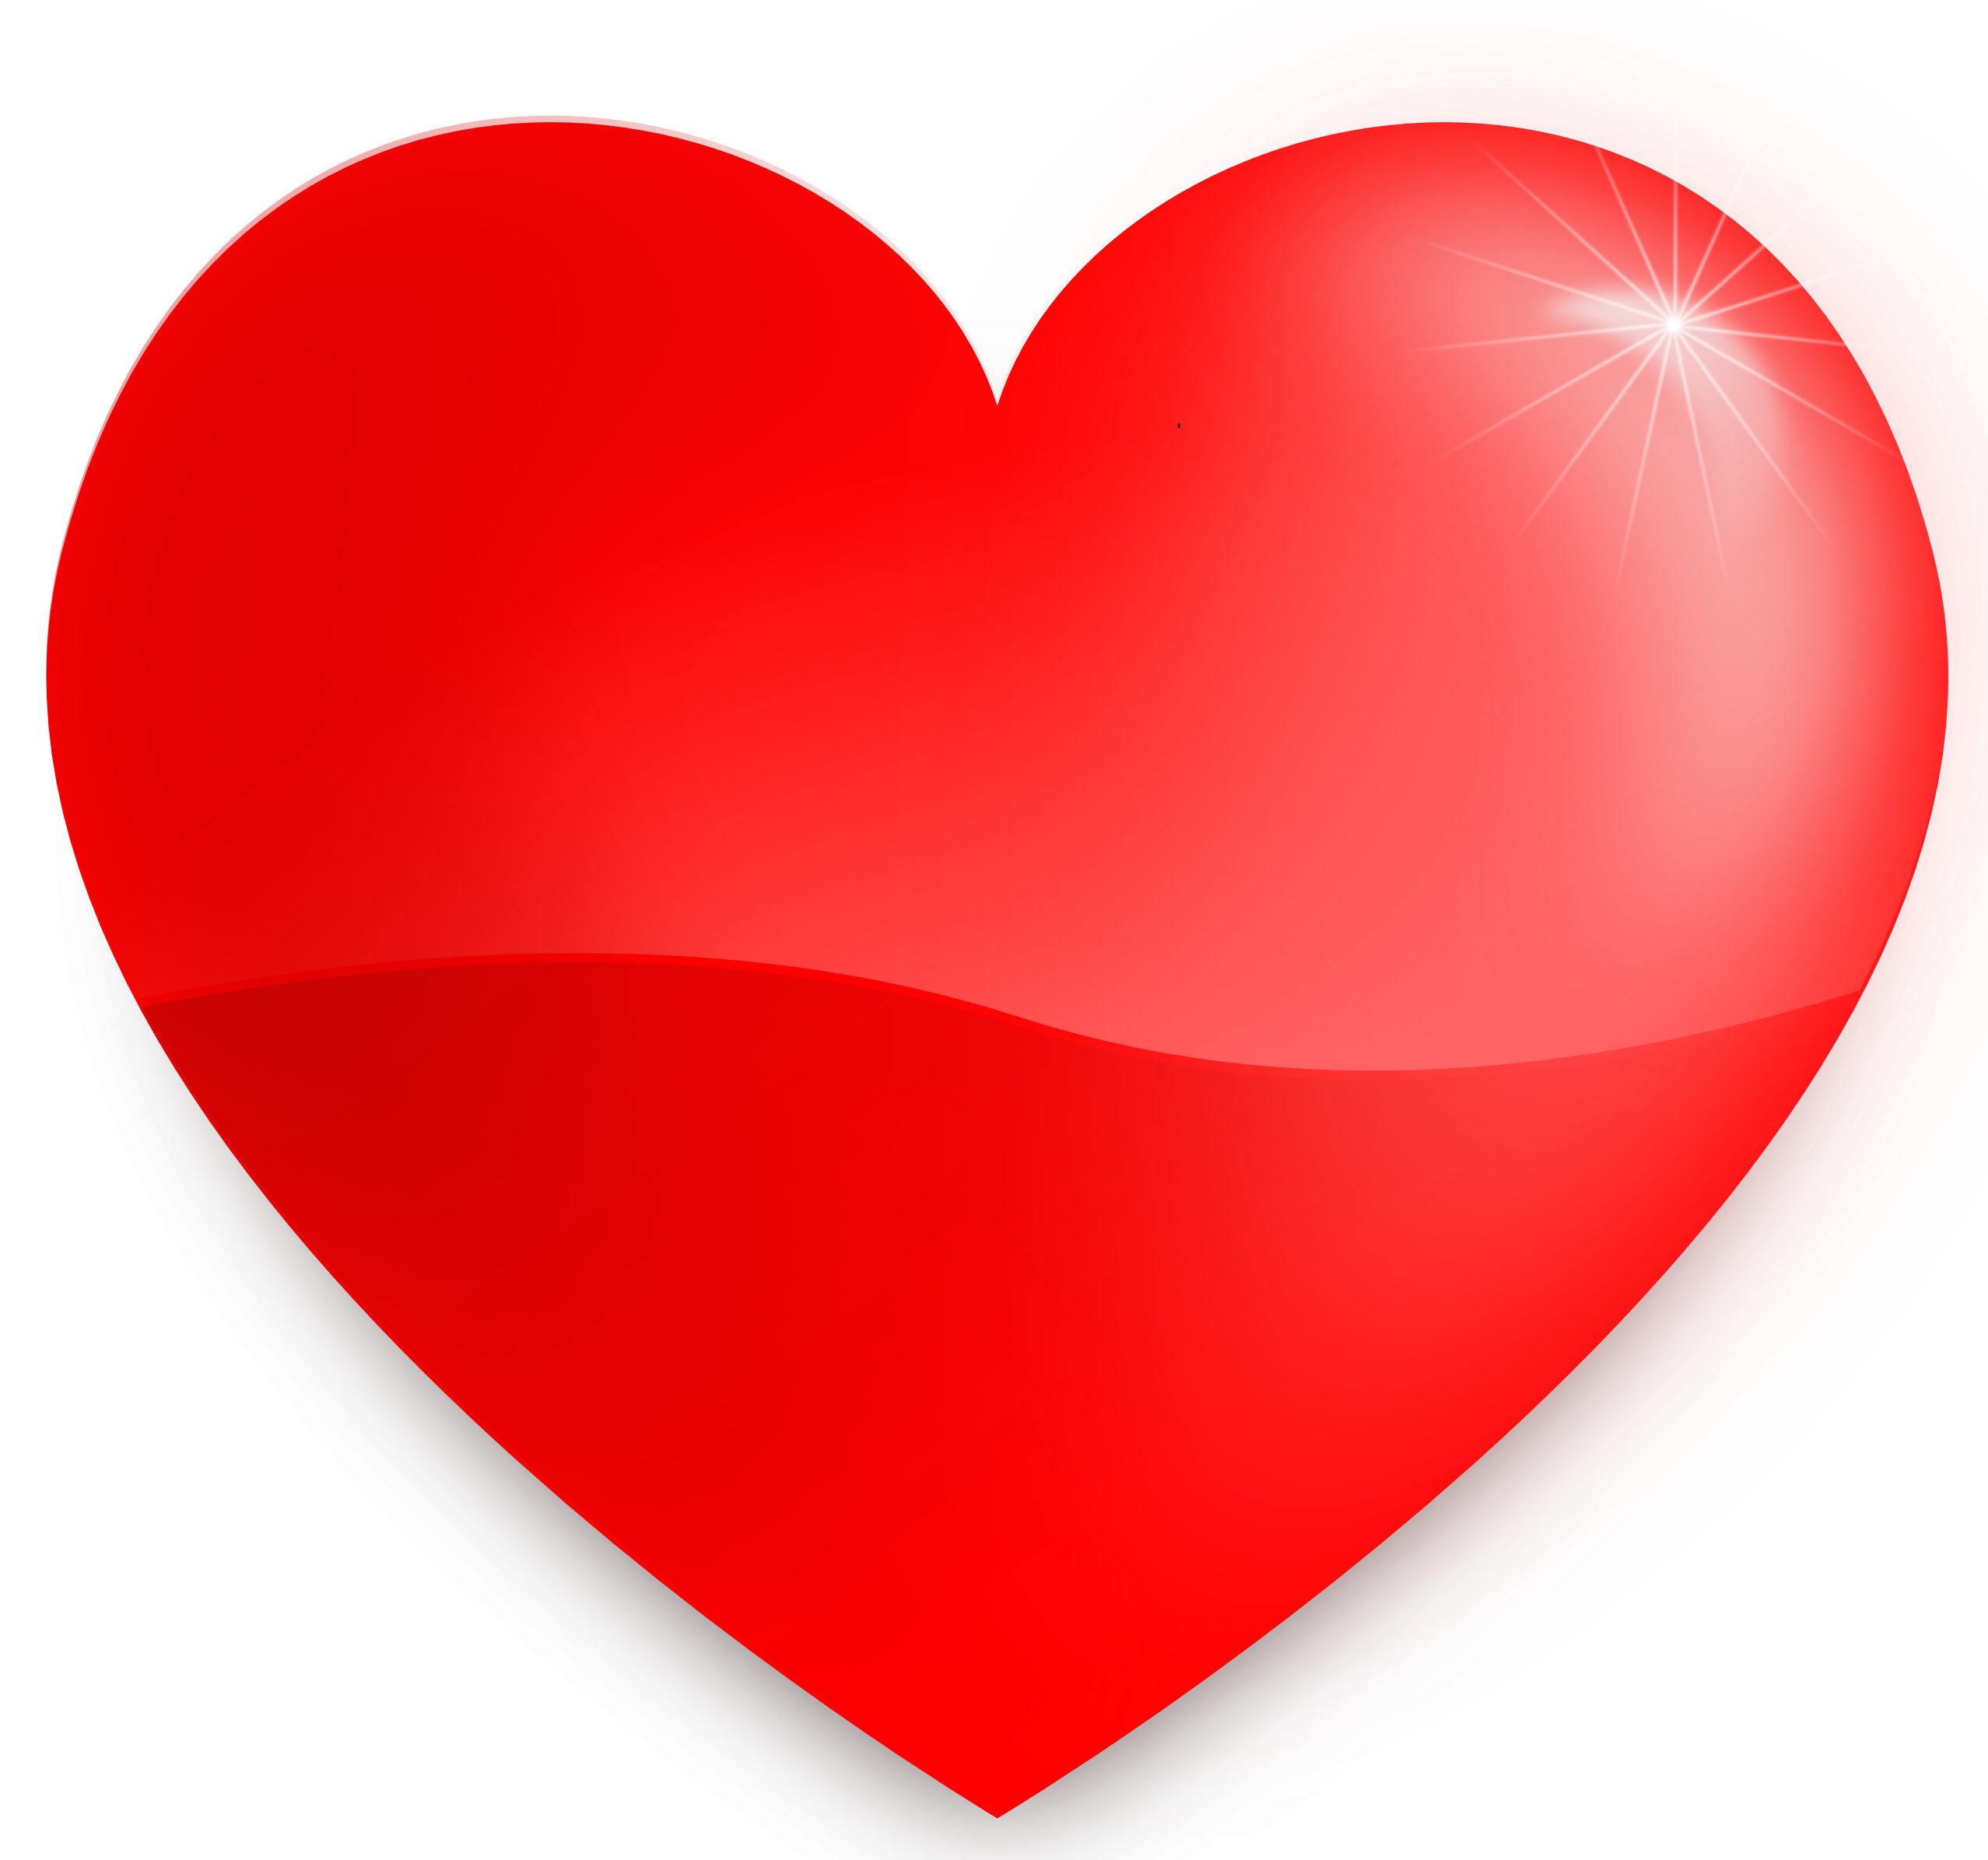 Twitter Emoji Heart PNG Fond darrière-plan